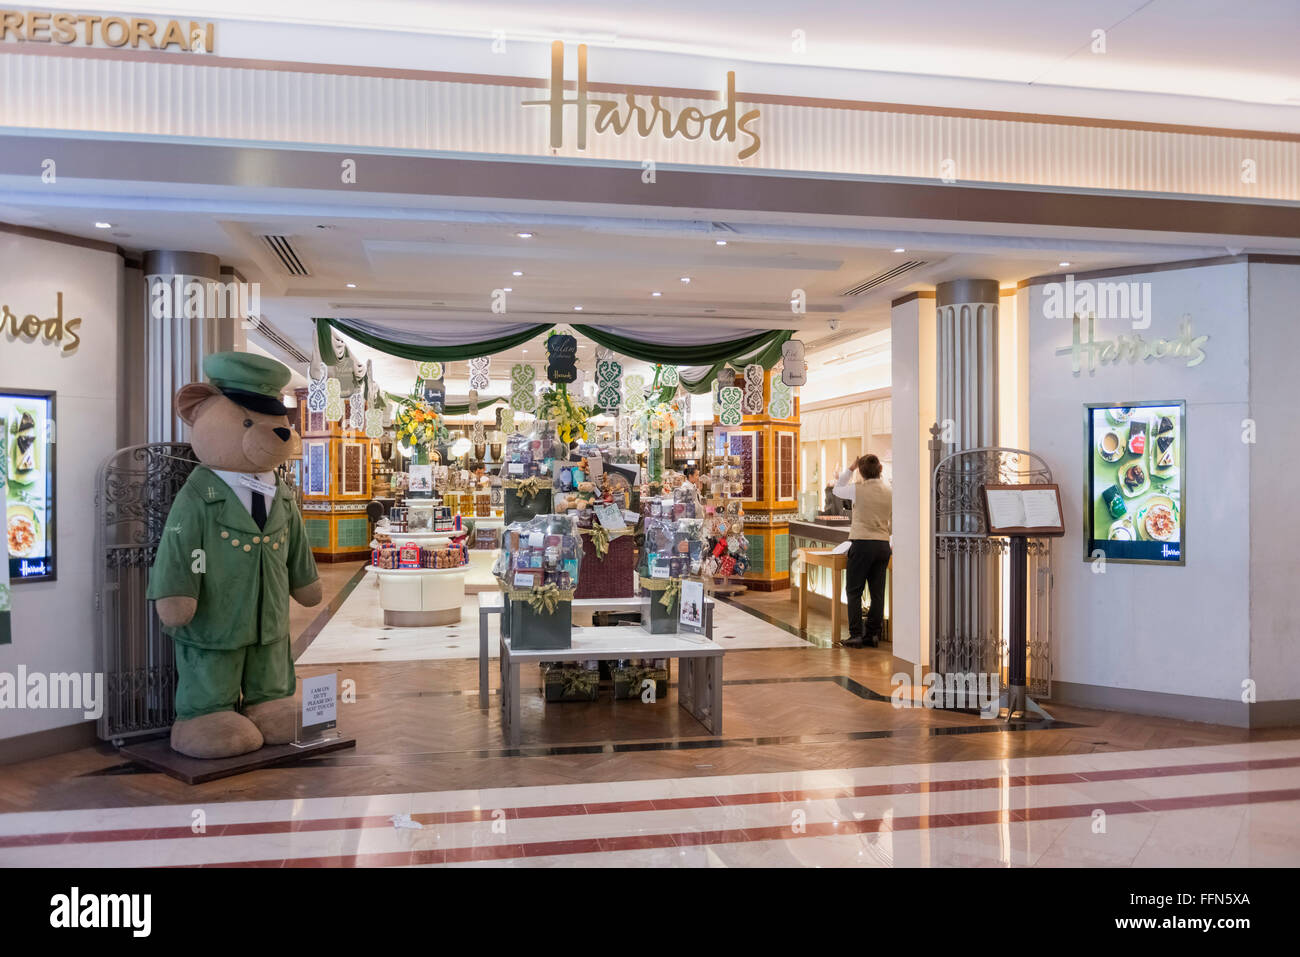 Harrods store dans le centre commercial Suria KLCC, Kuala Lumpur, Malaisie Banque D'Images